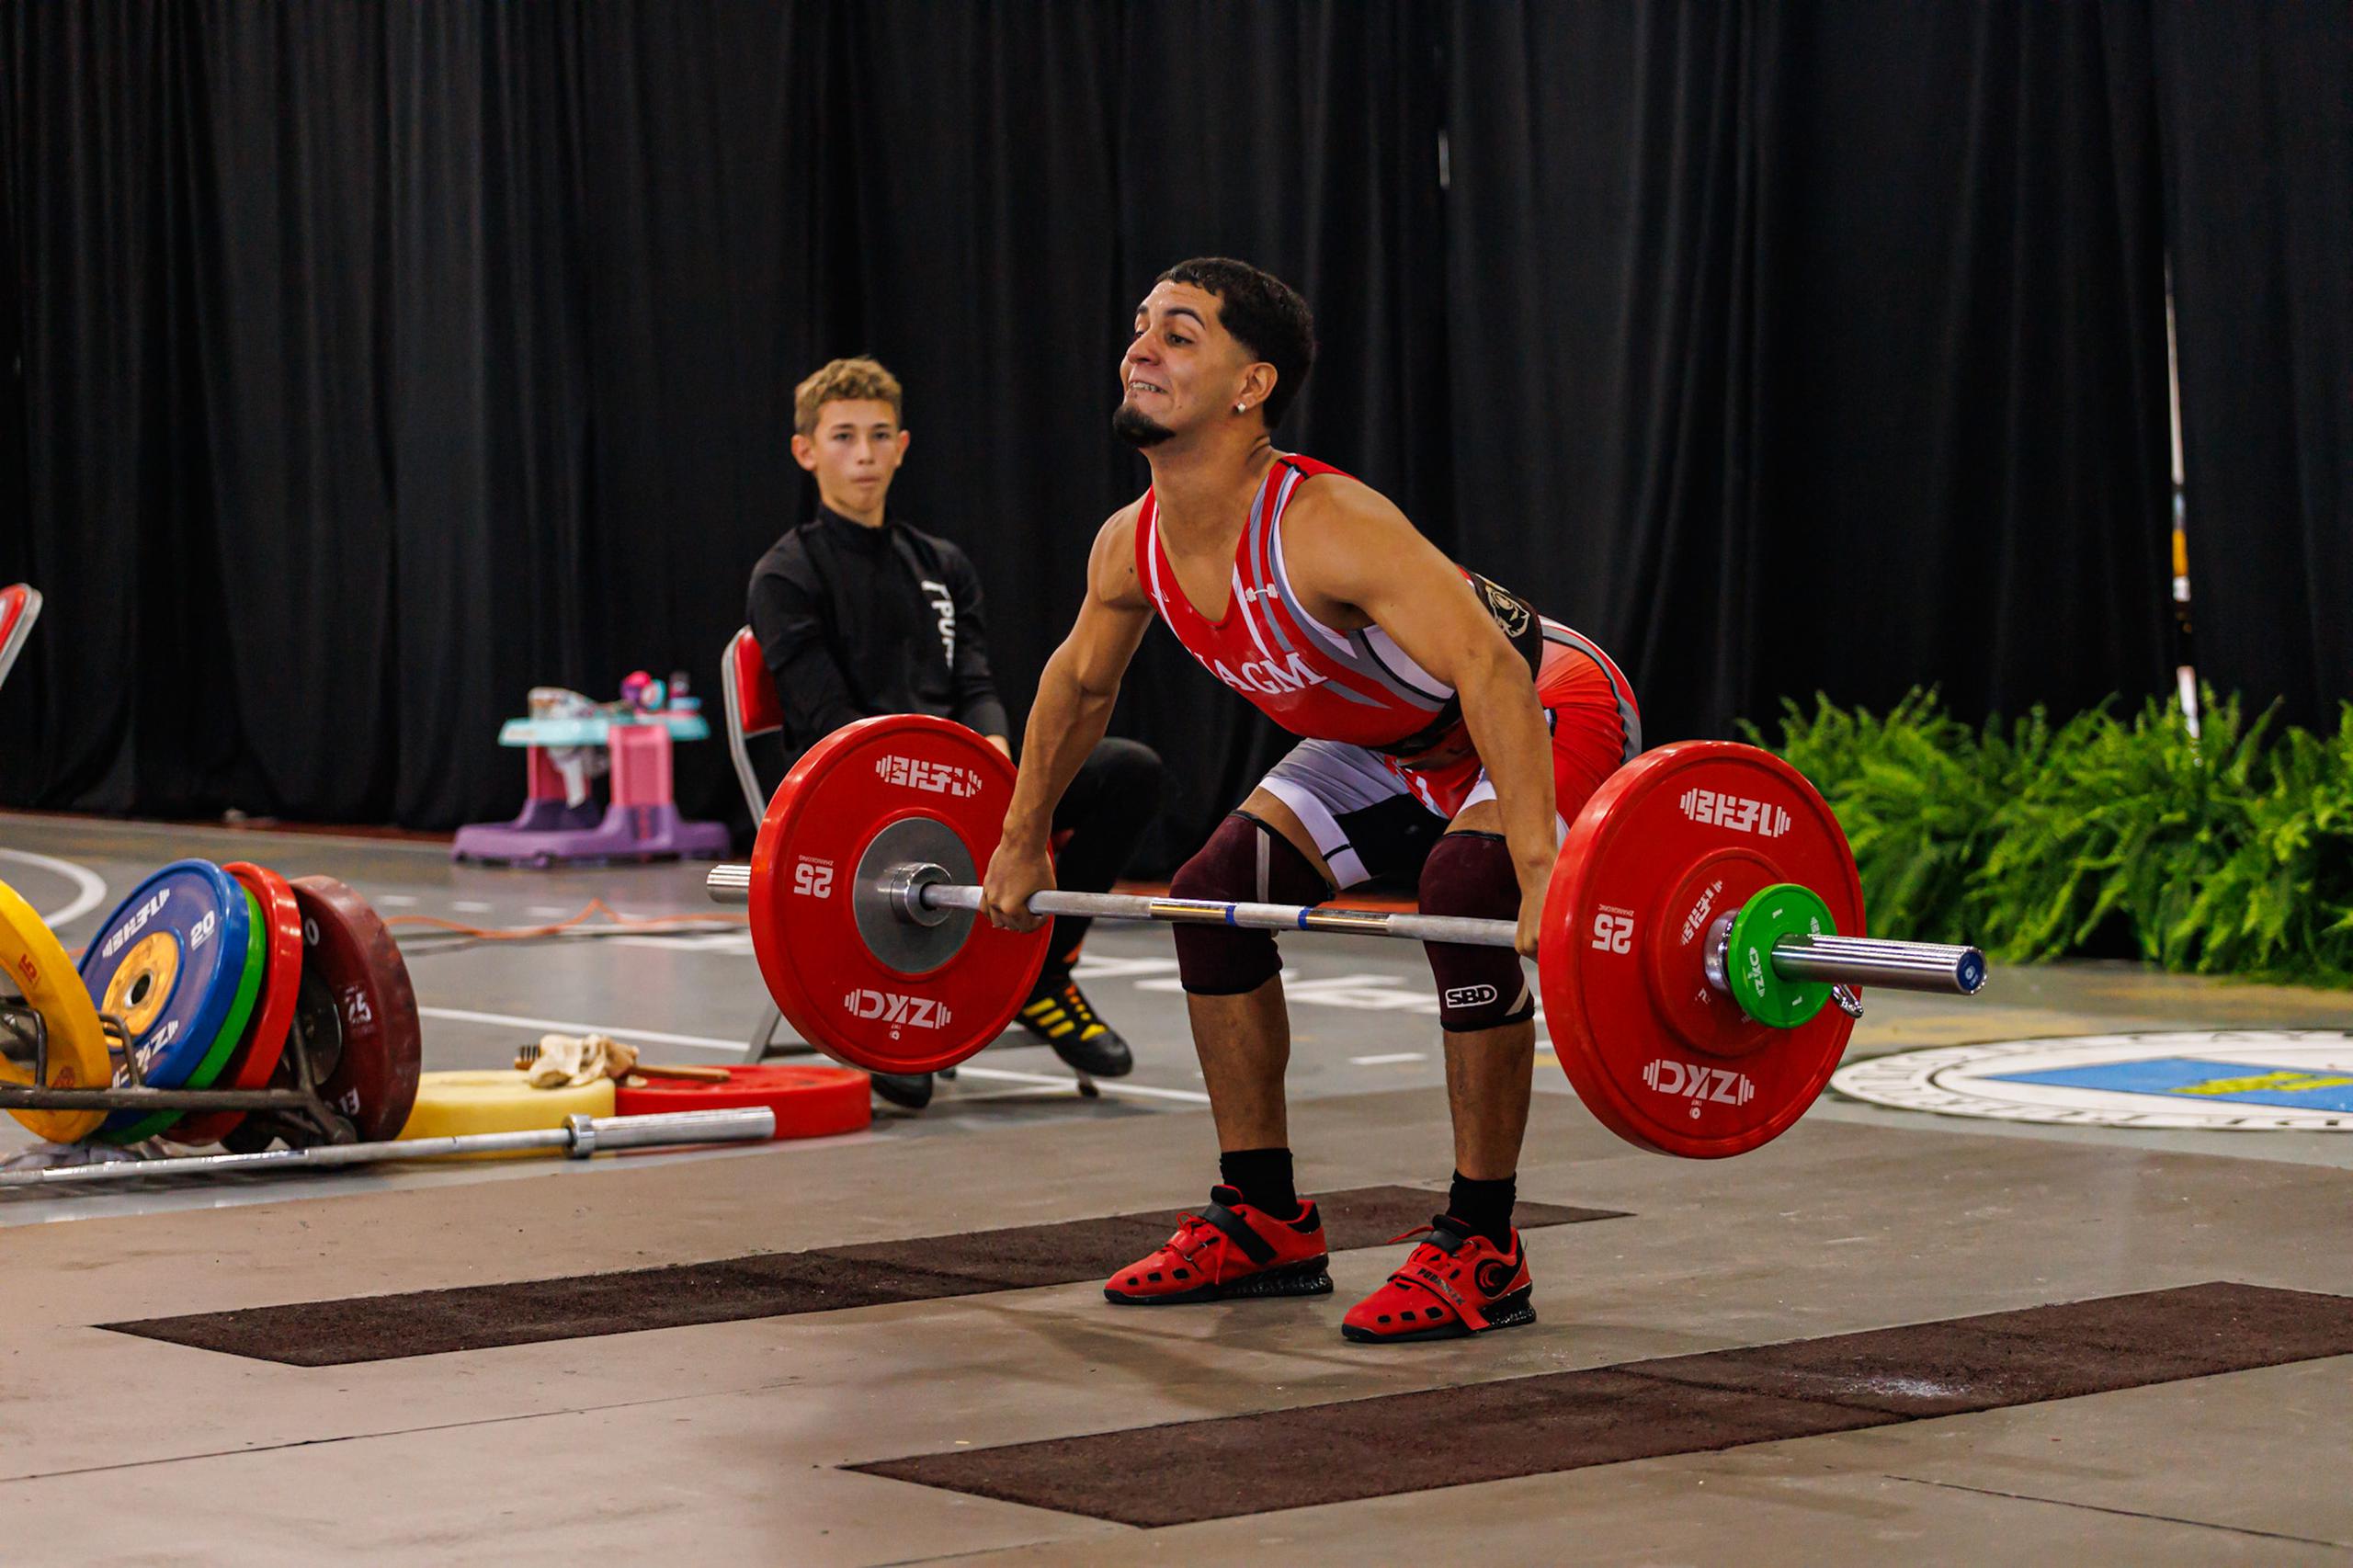 Yomar Miranda Resto registró marcas de 85 kilos en arranque, 110 kilos en envión y en total 195 kilos.